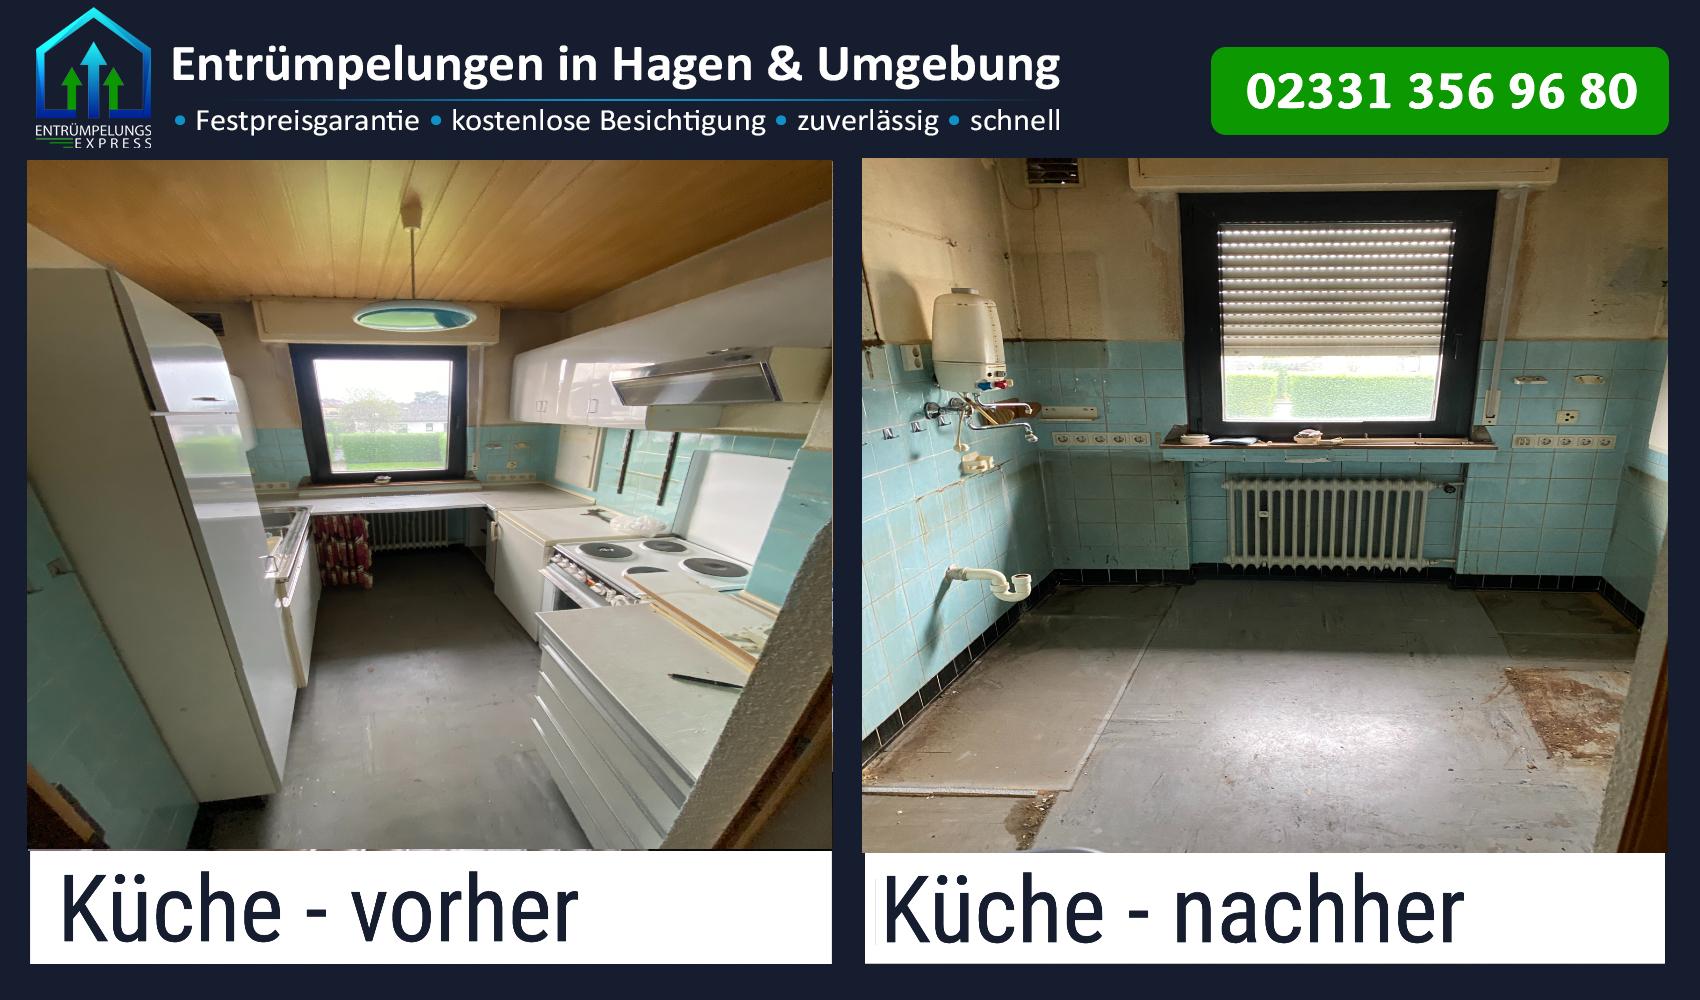 Bild 1 Entrümpelungs Express - Entrümpelungen, Wohnungsauflösungen und Haushaltsauflösungen in Hagen